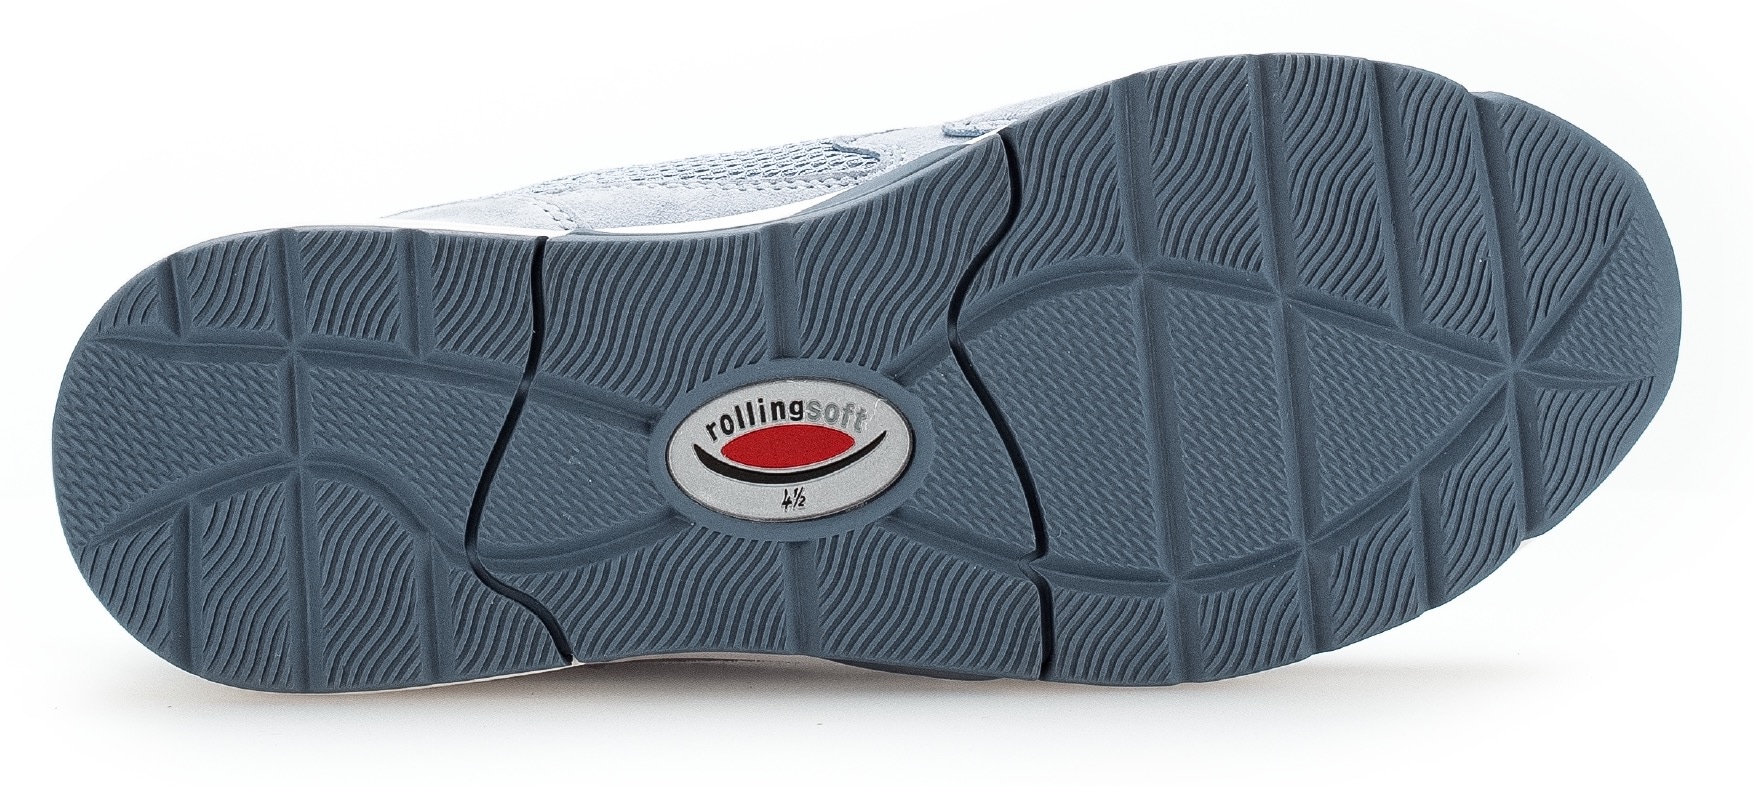 Gabor Rollingsoft Keilsneaker, mit recyceltem Fußbett, Freizeitschuh, Halbschuh, Schnürschuh